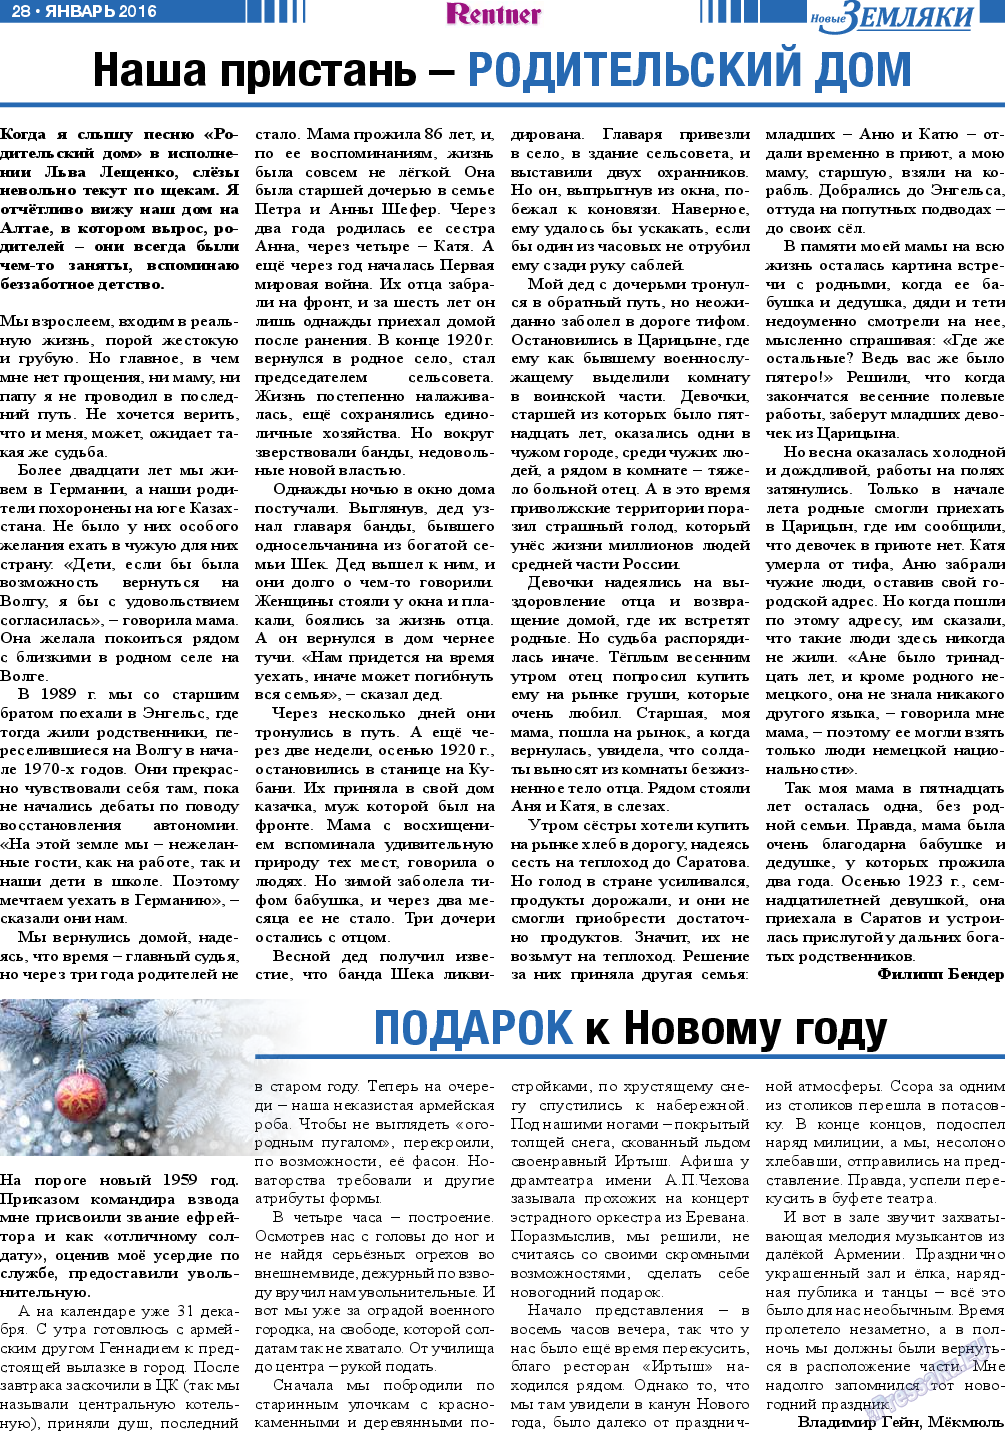 Новые Земляки (газета). 2016 год, номер 1, стр. 28